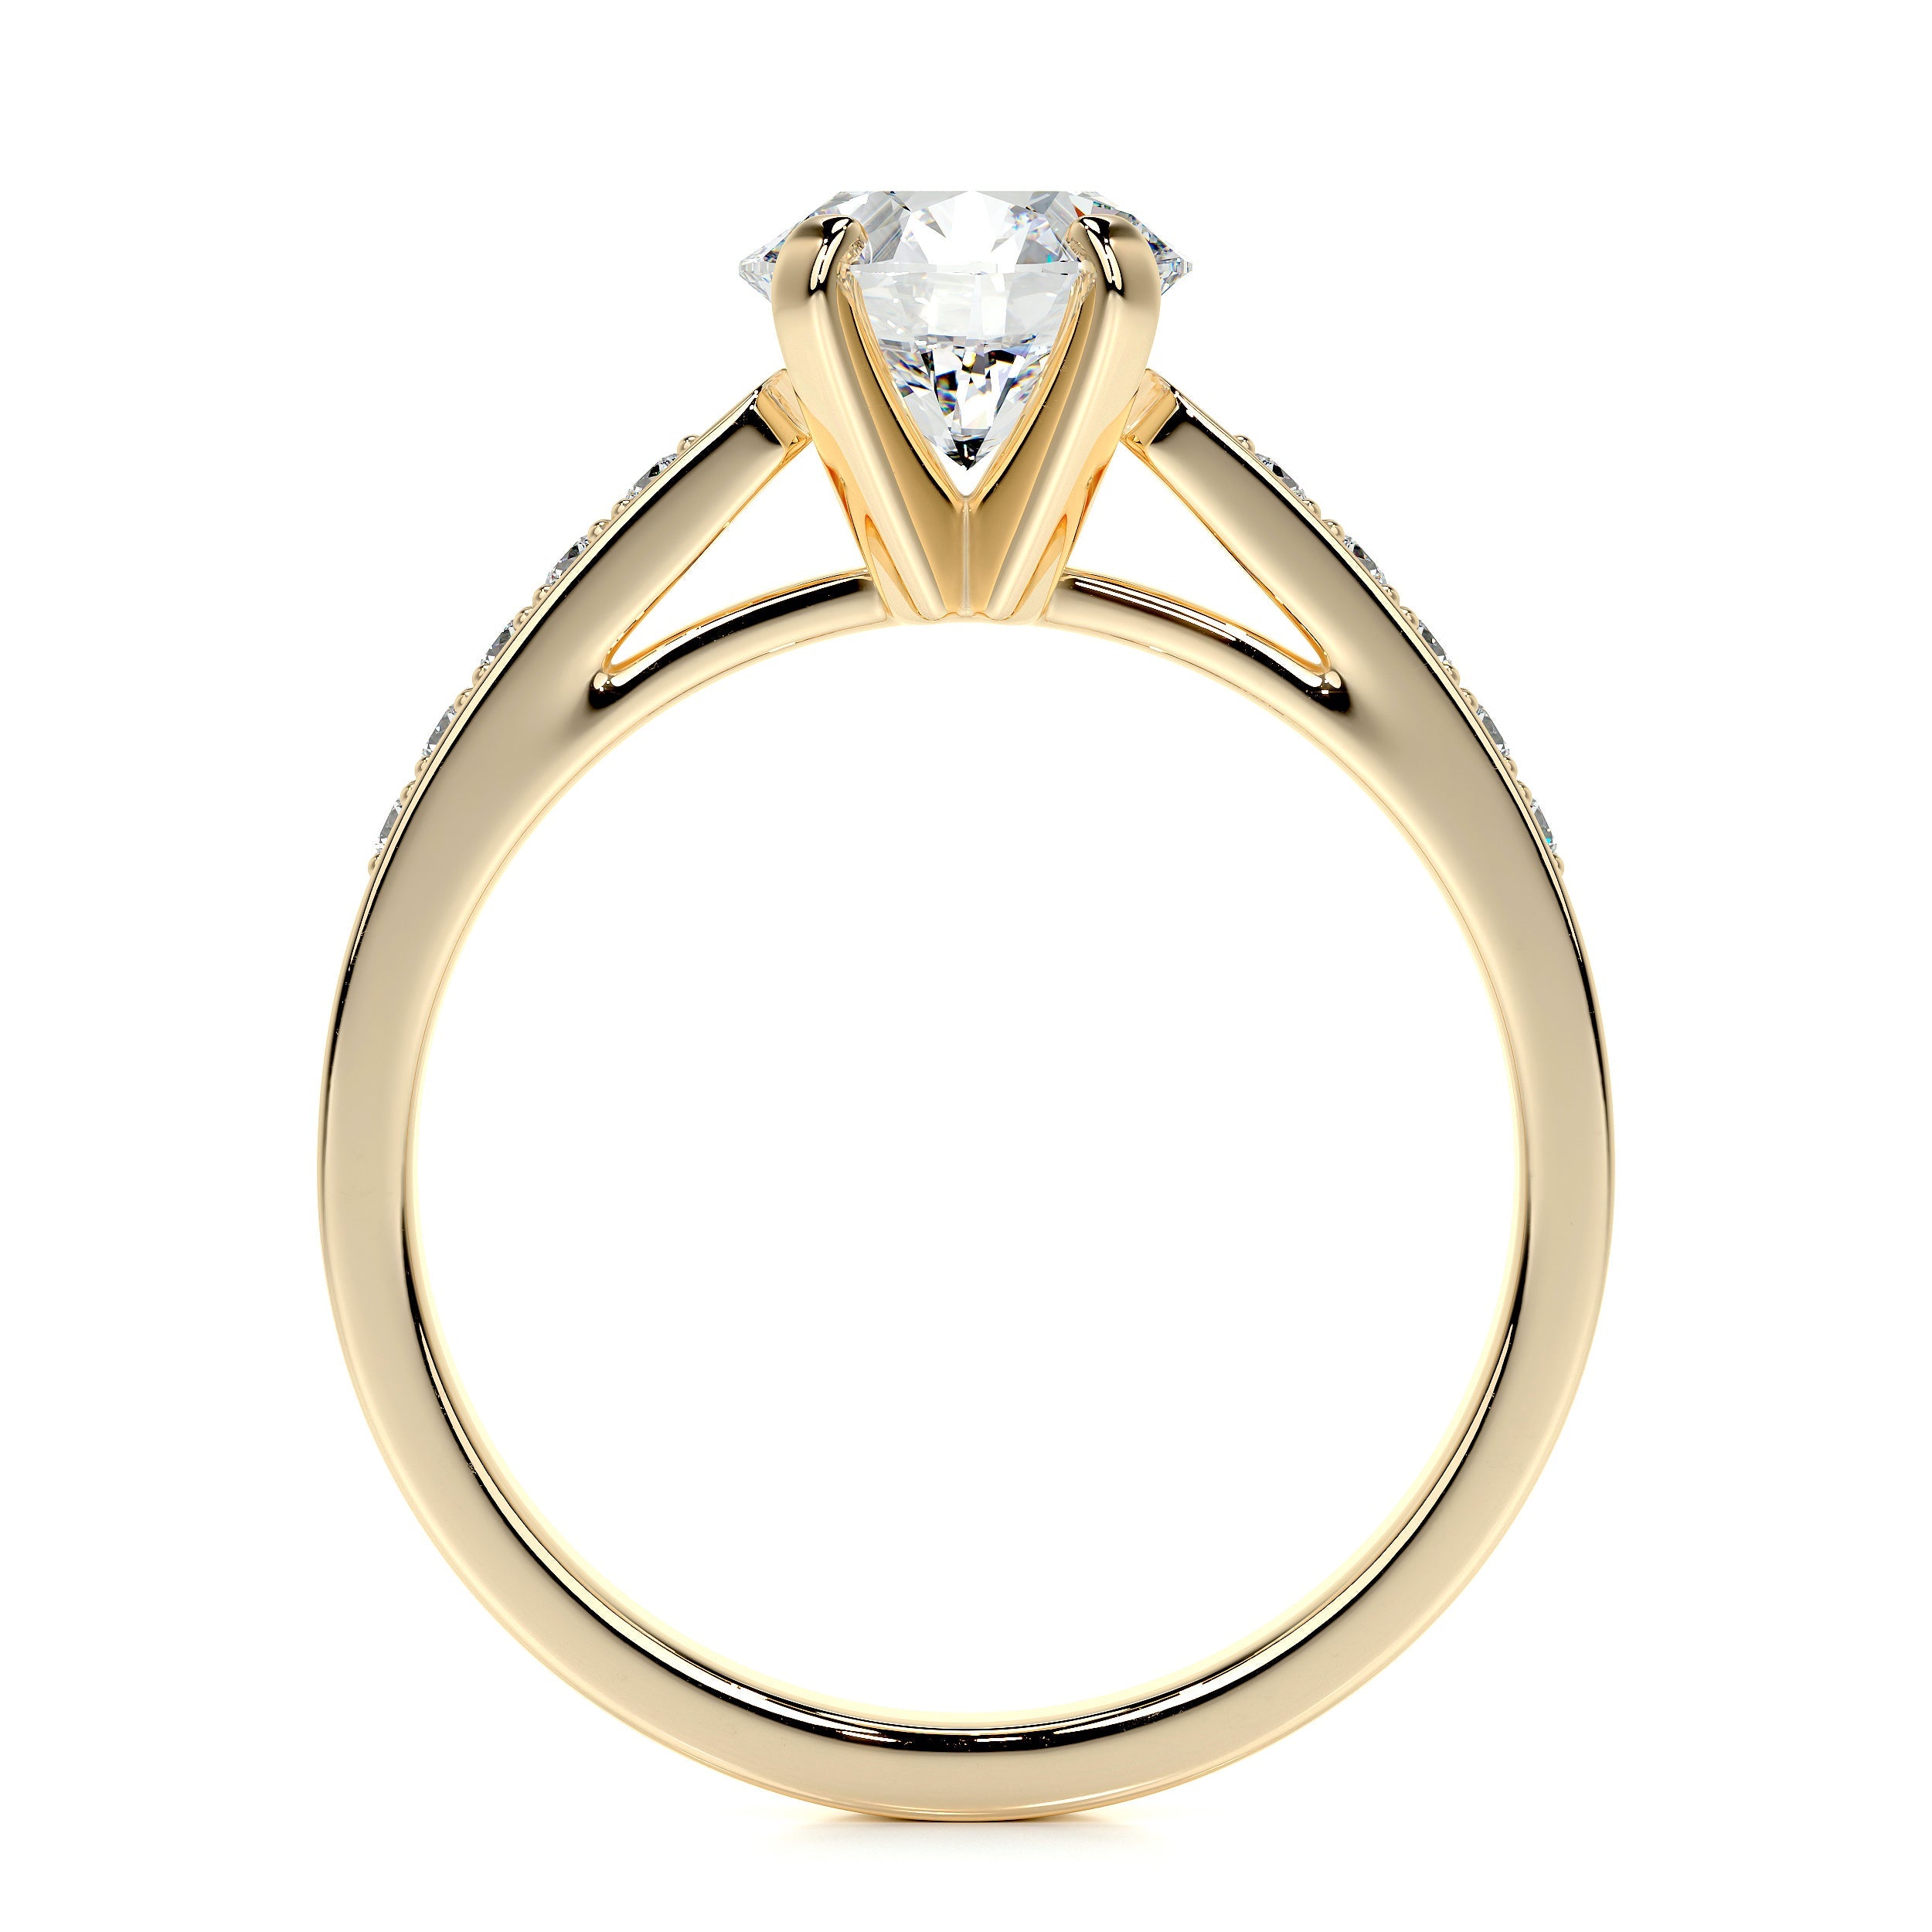 Margaret Lab Grown Diamond Ring   (1.35 Carat) -18K Yellow Gold